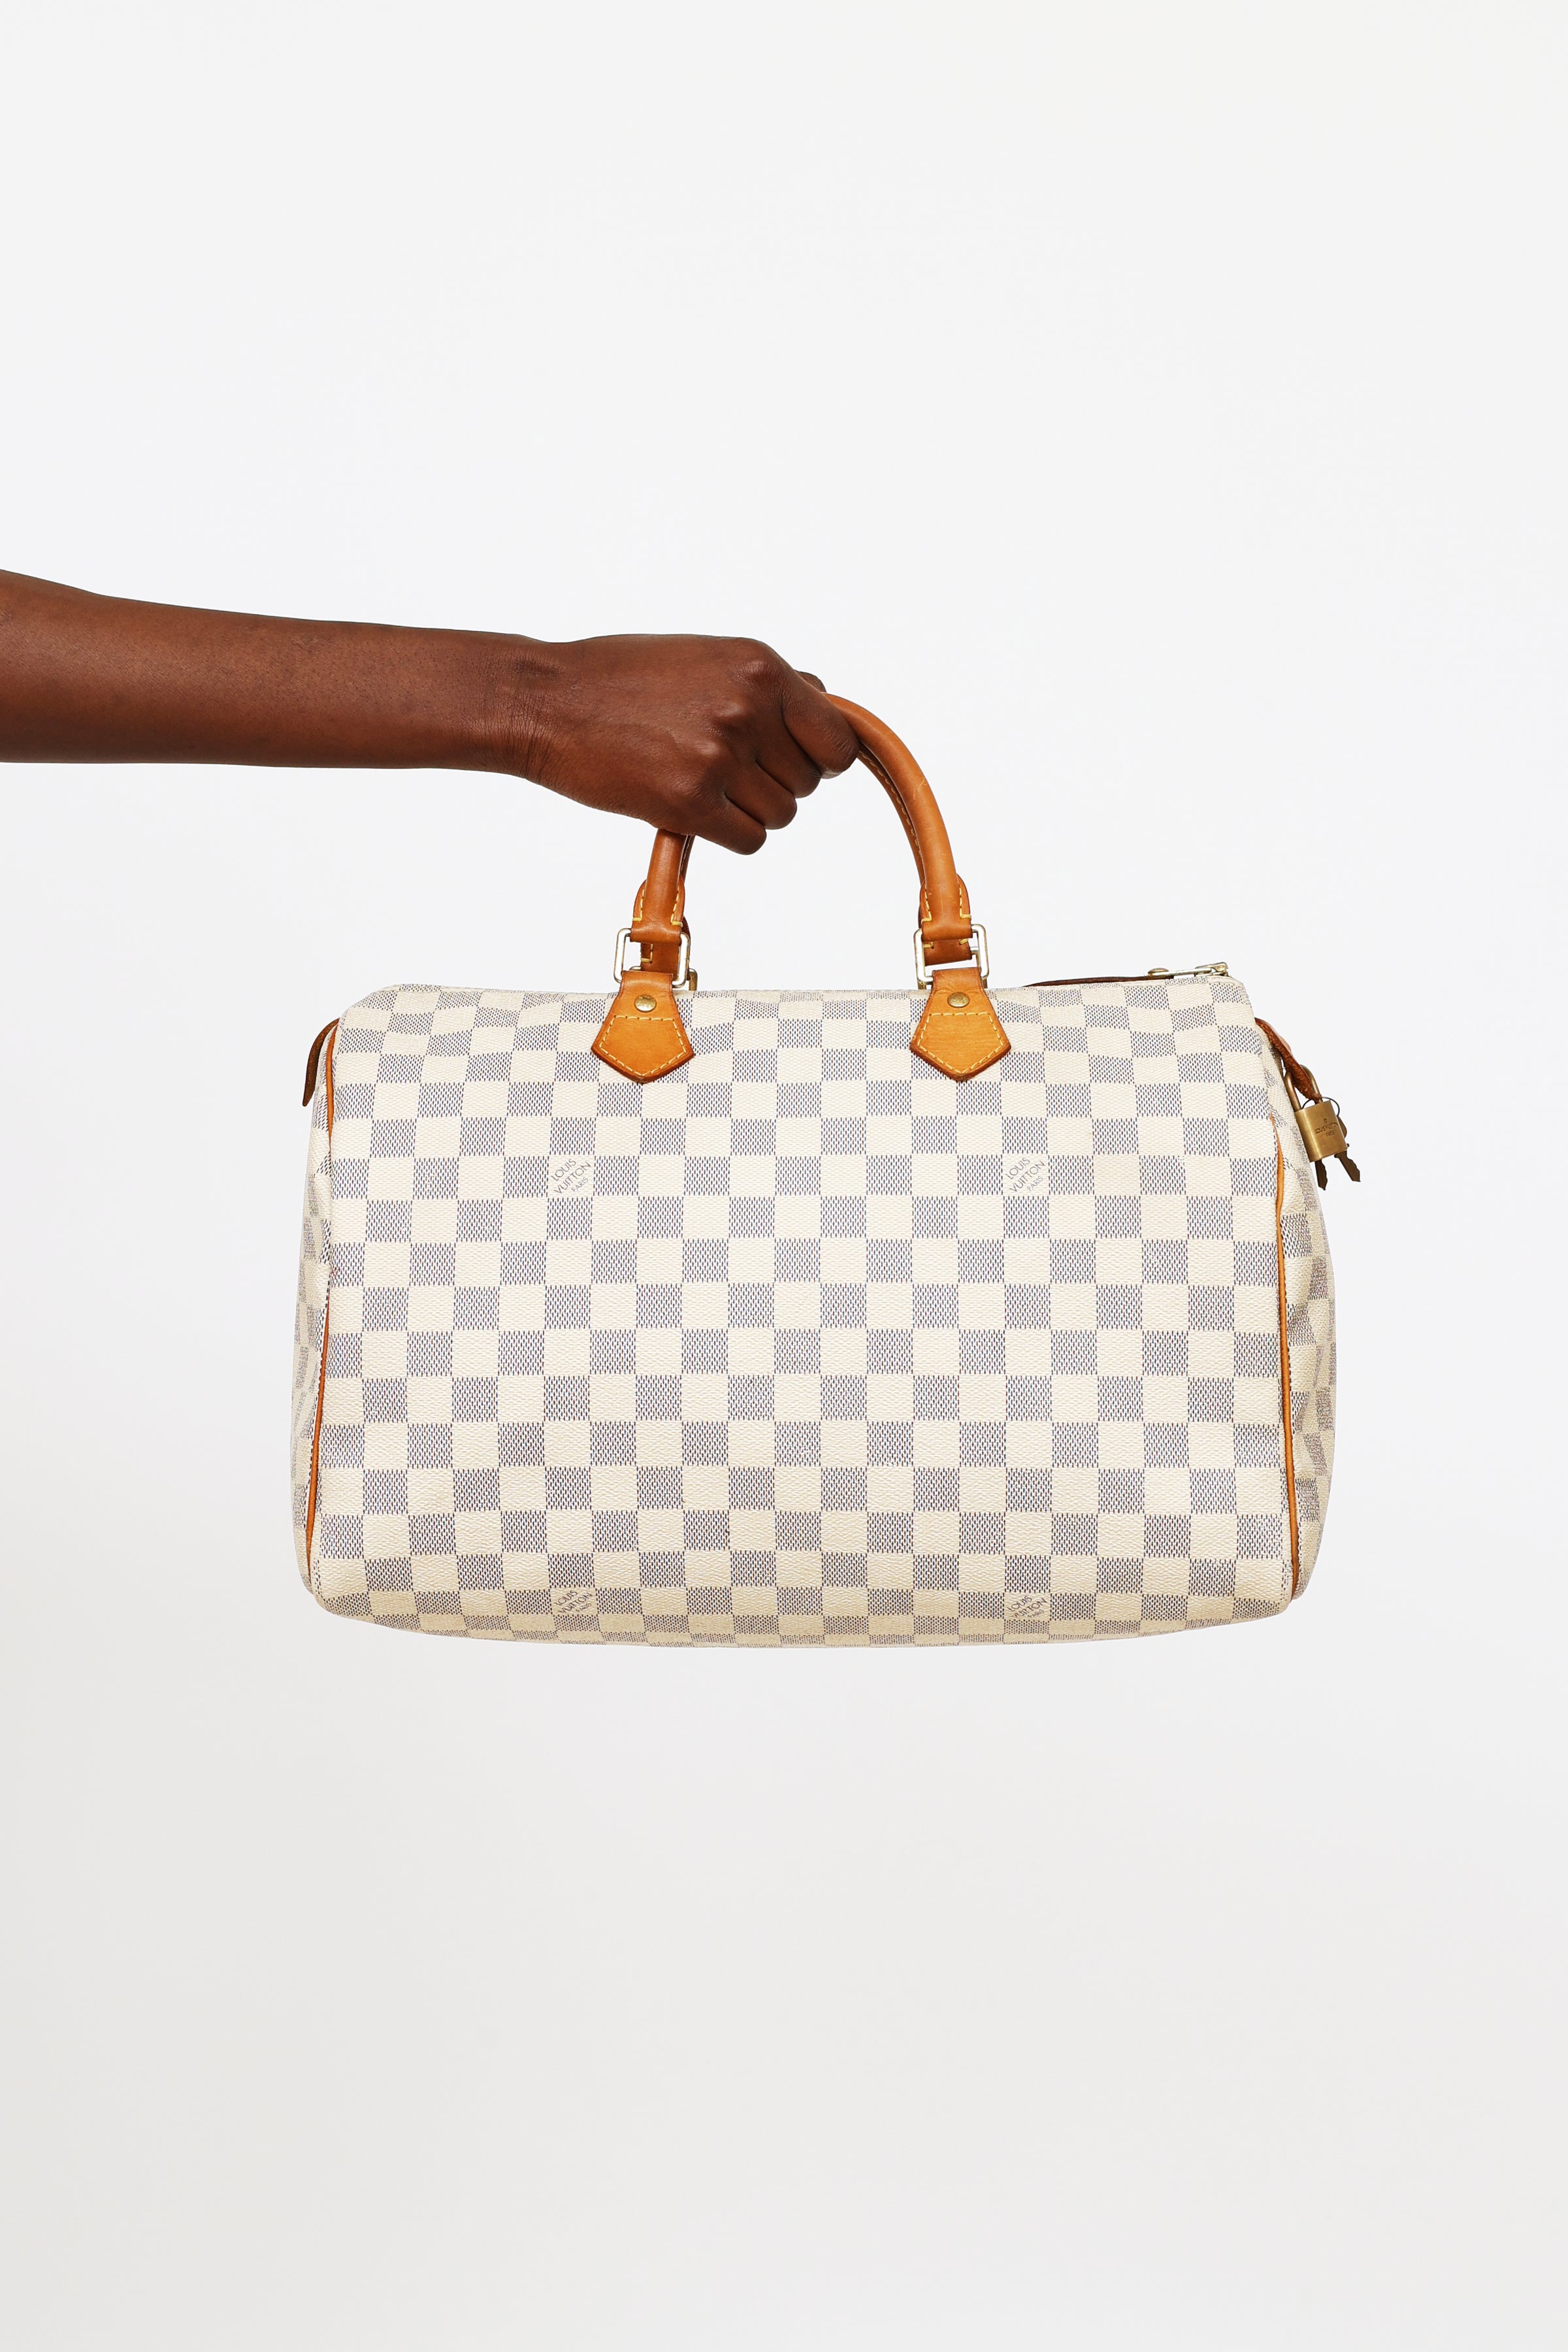 Louis Vuitton Damier Azur Speedy 35 Hand Bag